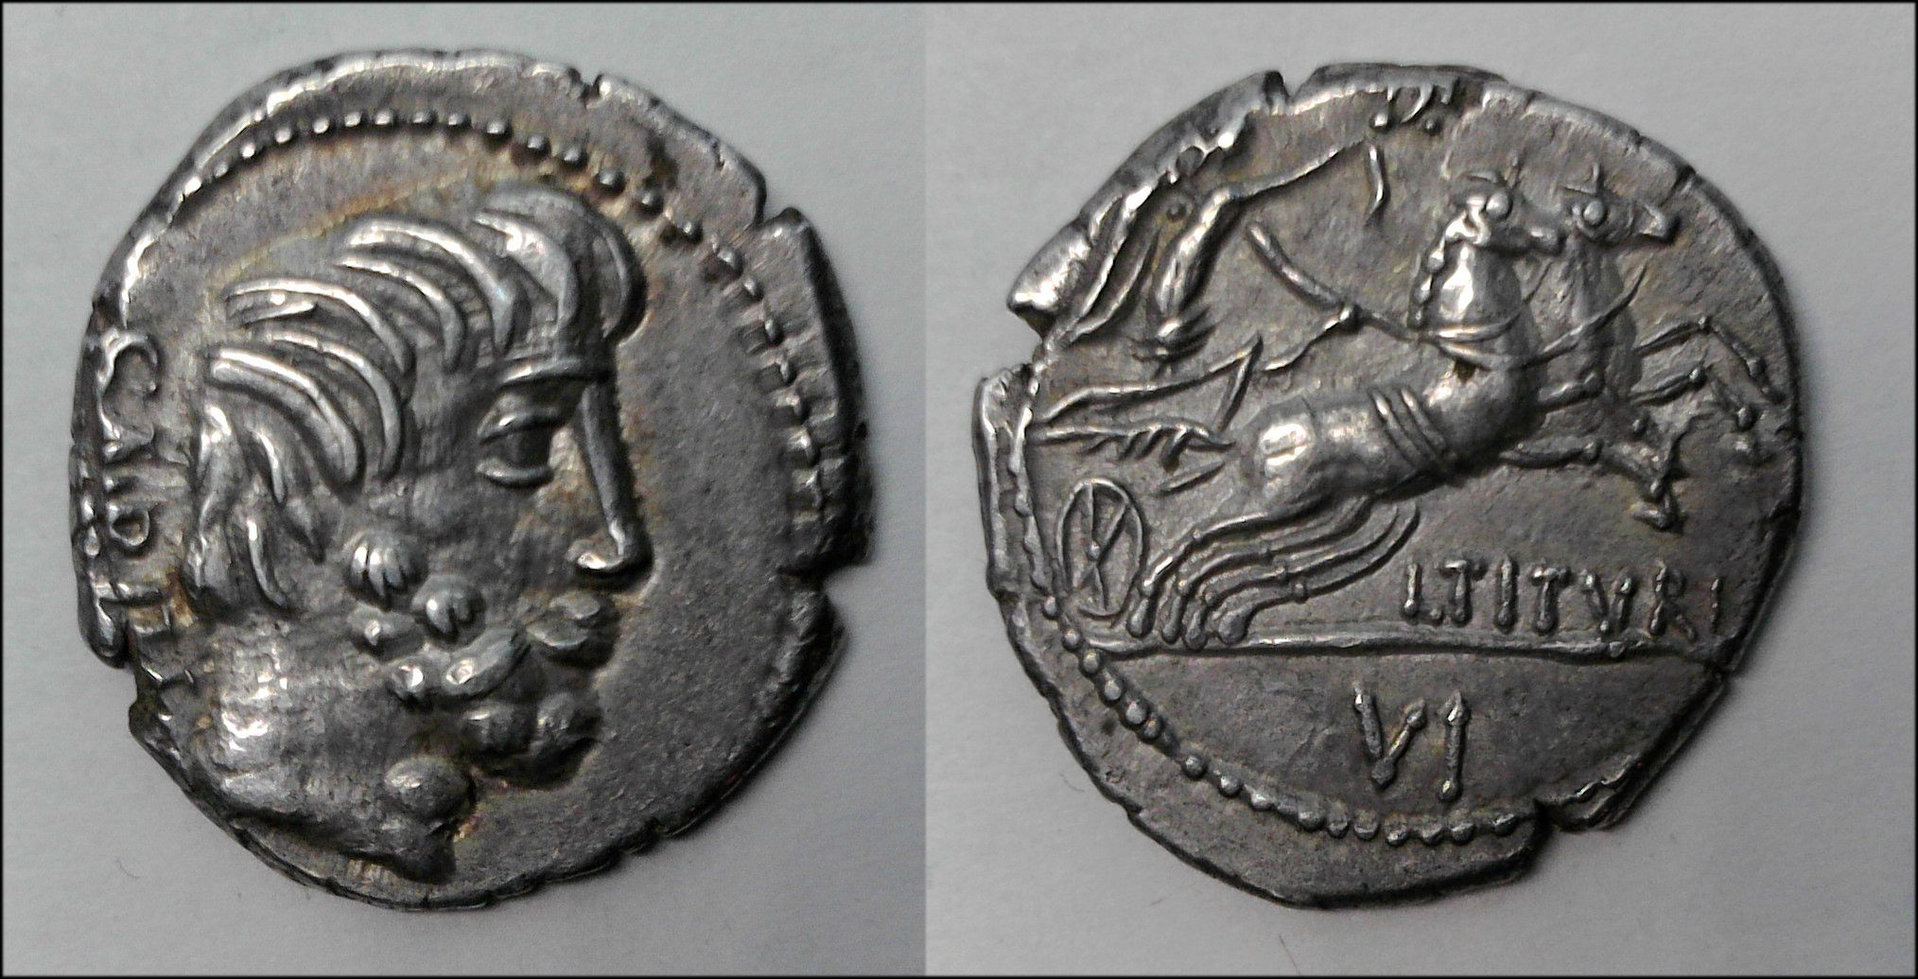 LTituri denarius.jpg